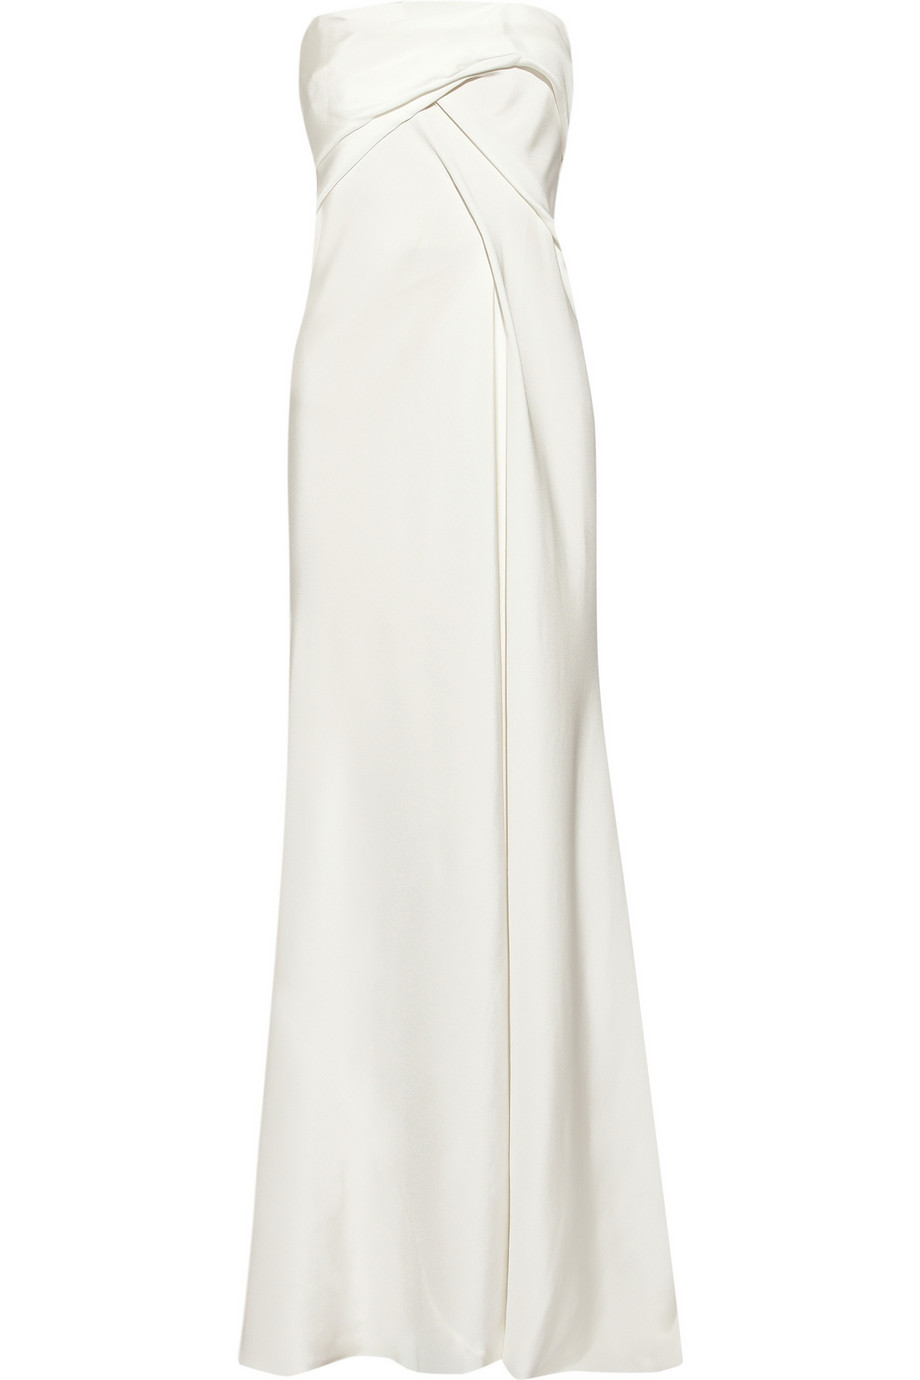 Lyst - Donna Karan Strapless Bustier Gown in White